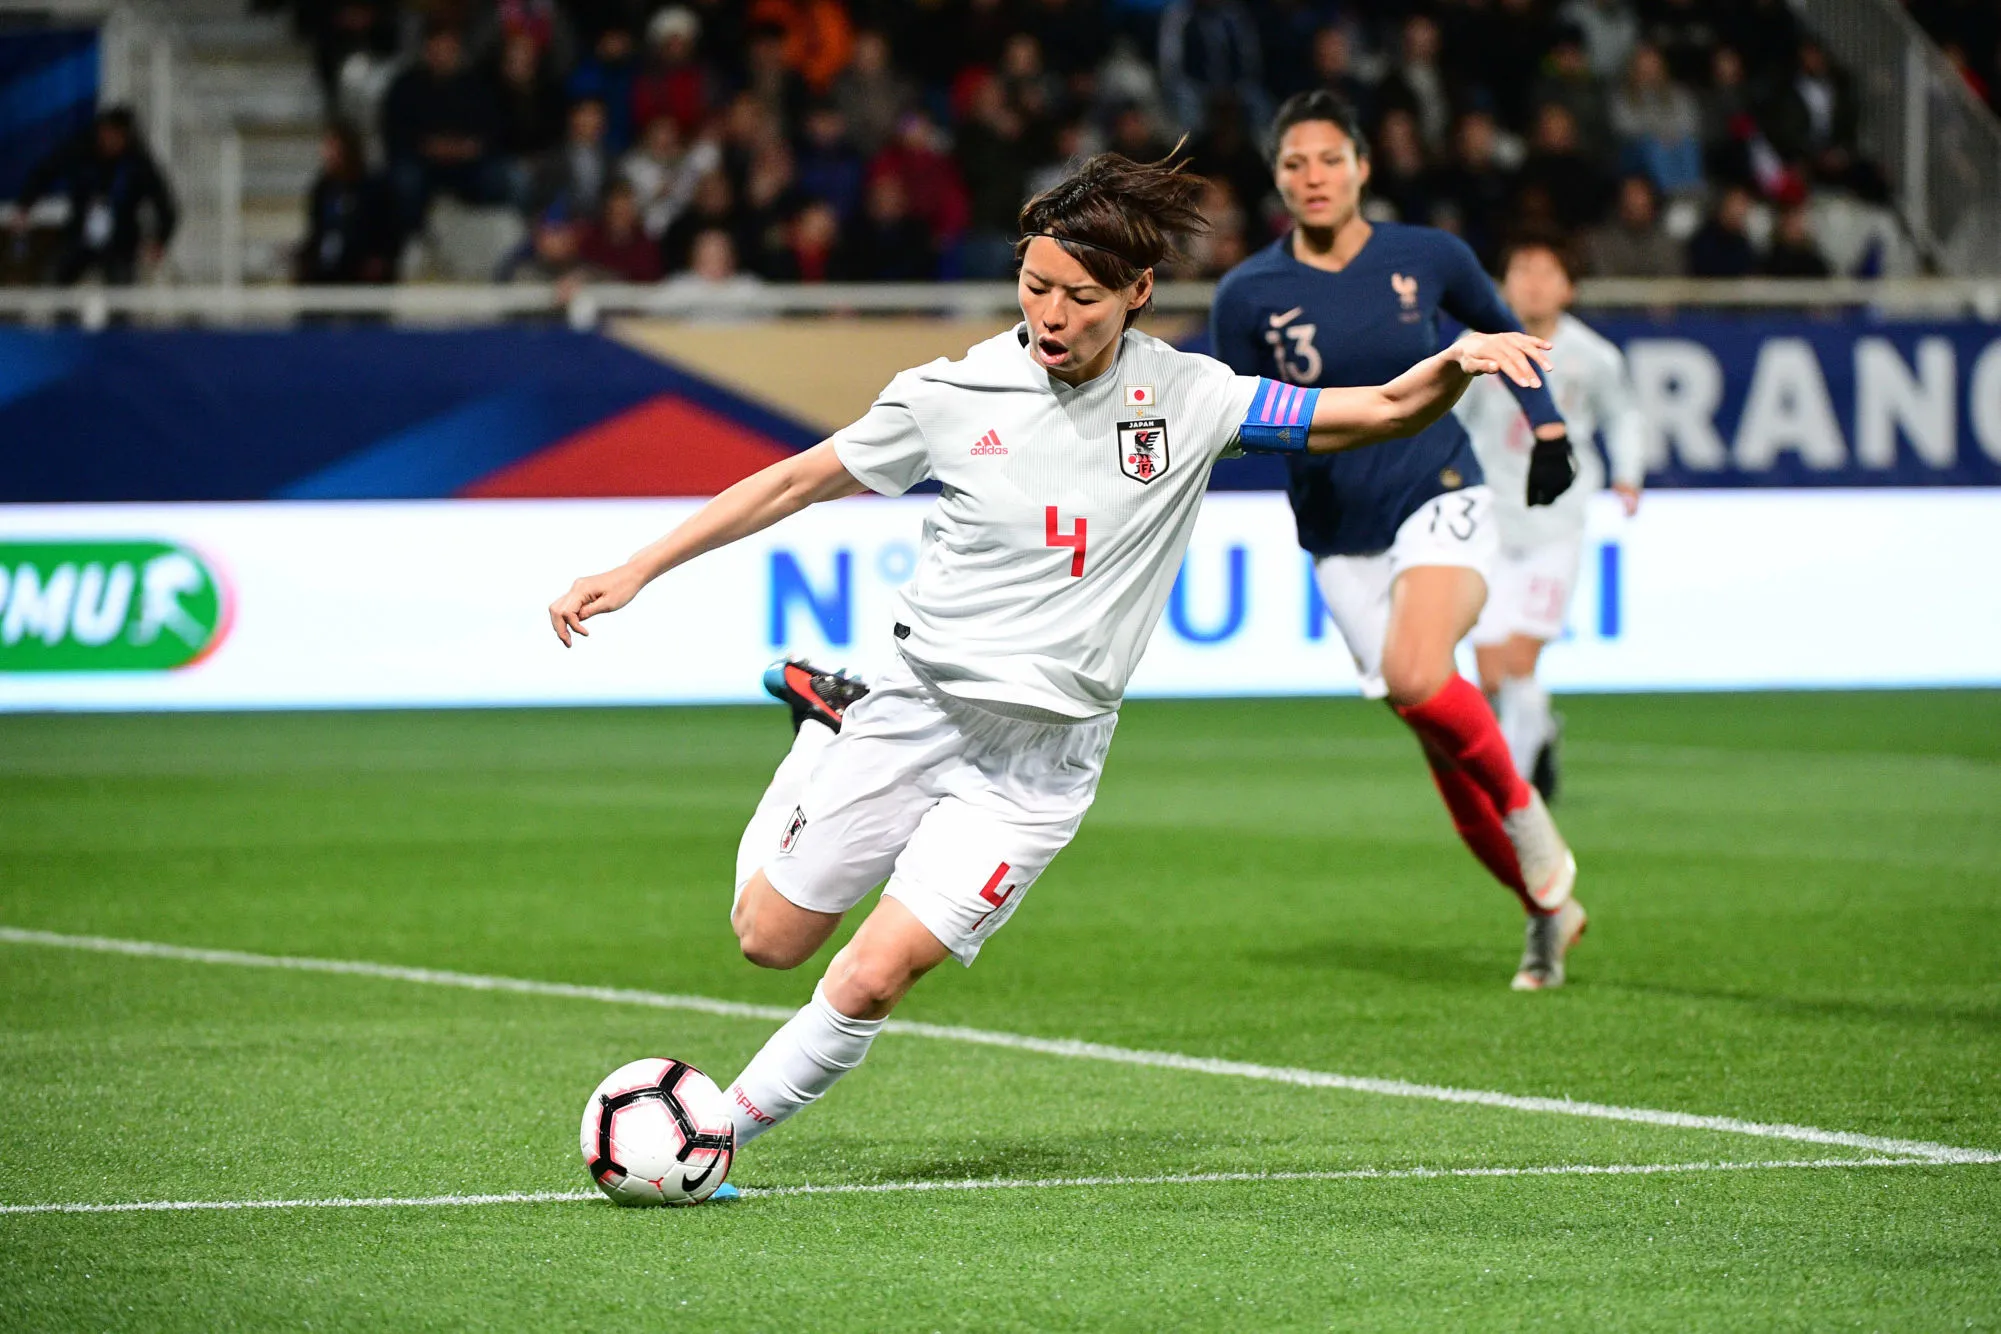 Pronostic Japon Angleterre : Analyse, prono et cotes du match de la Coupe du monde féminine 2019